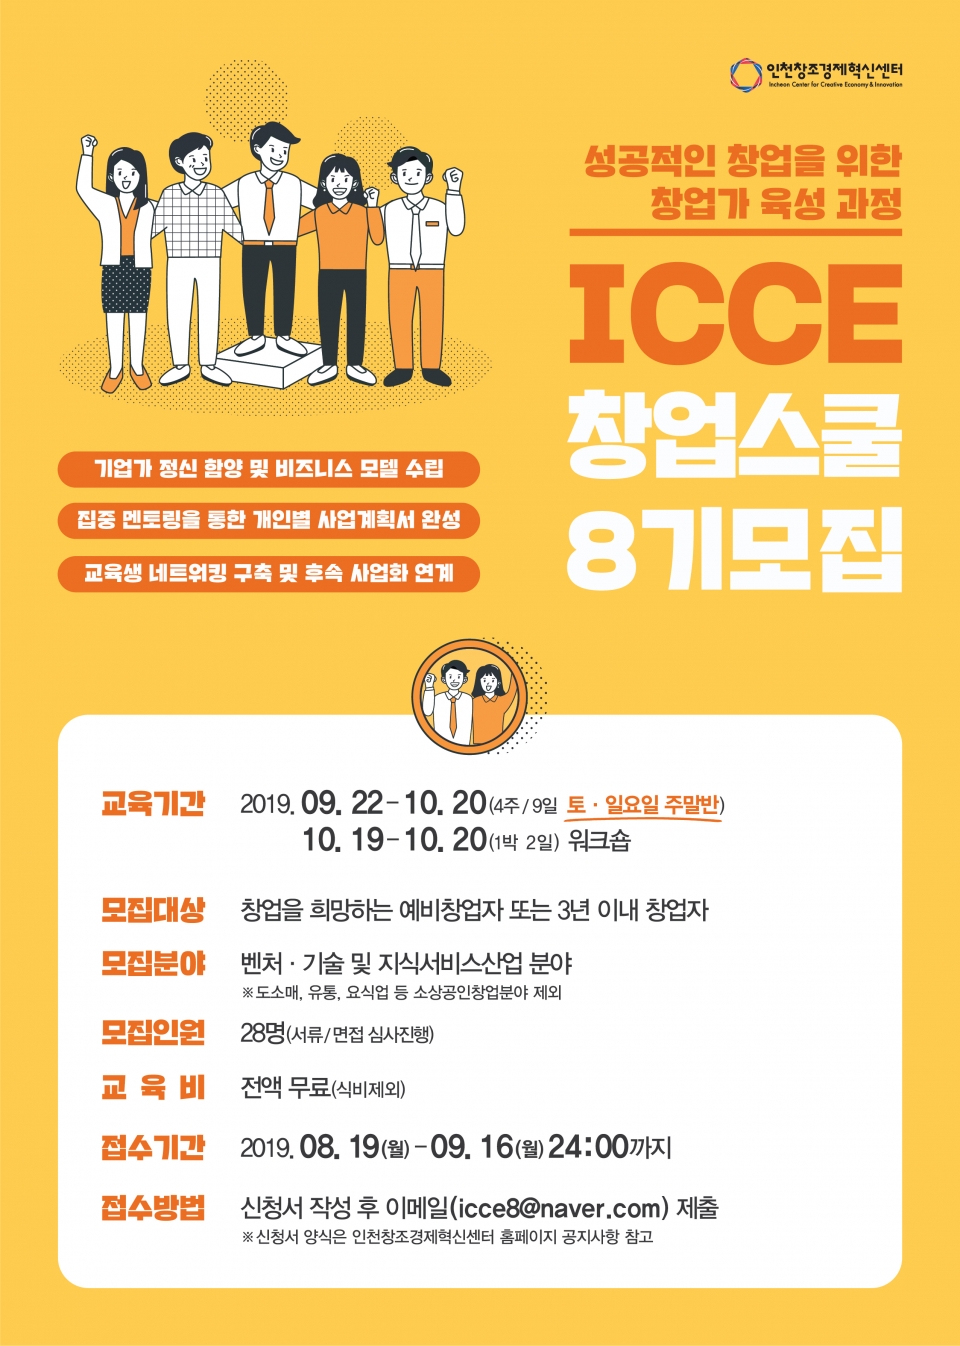 ‘ICCE 창업스쿨’ 포스터. (출처: 인천창조경제혁신센터)